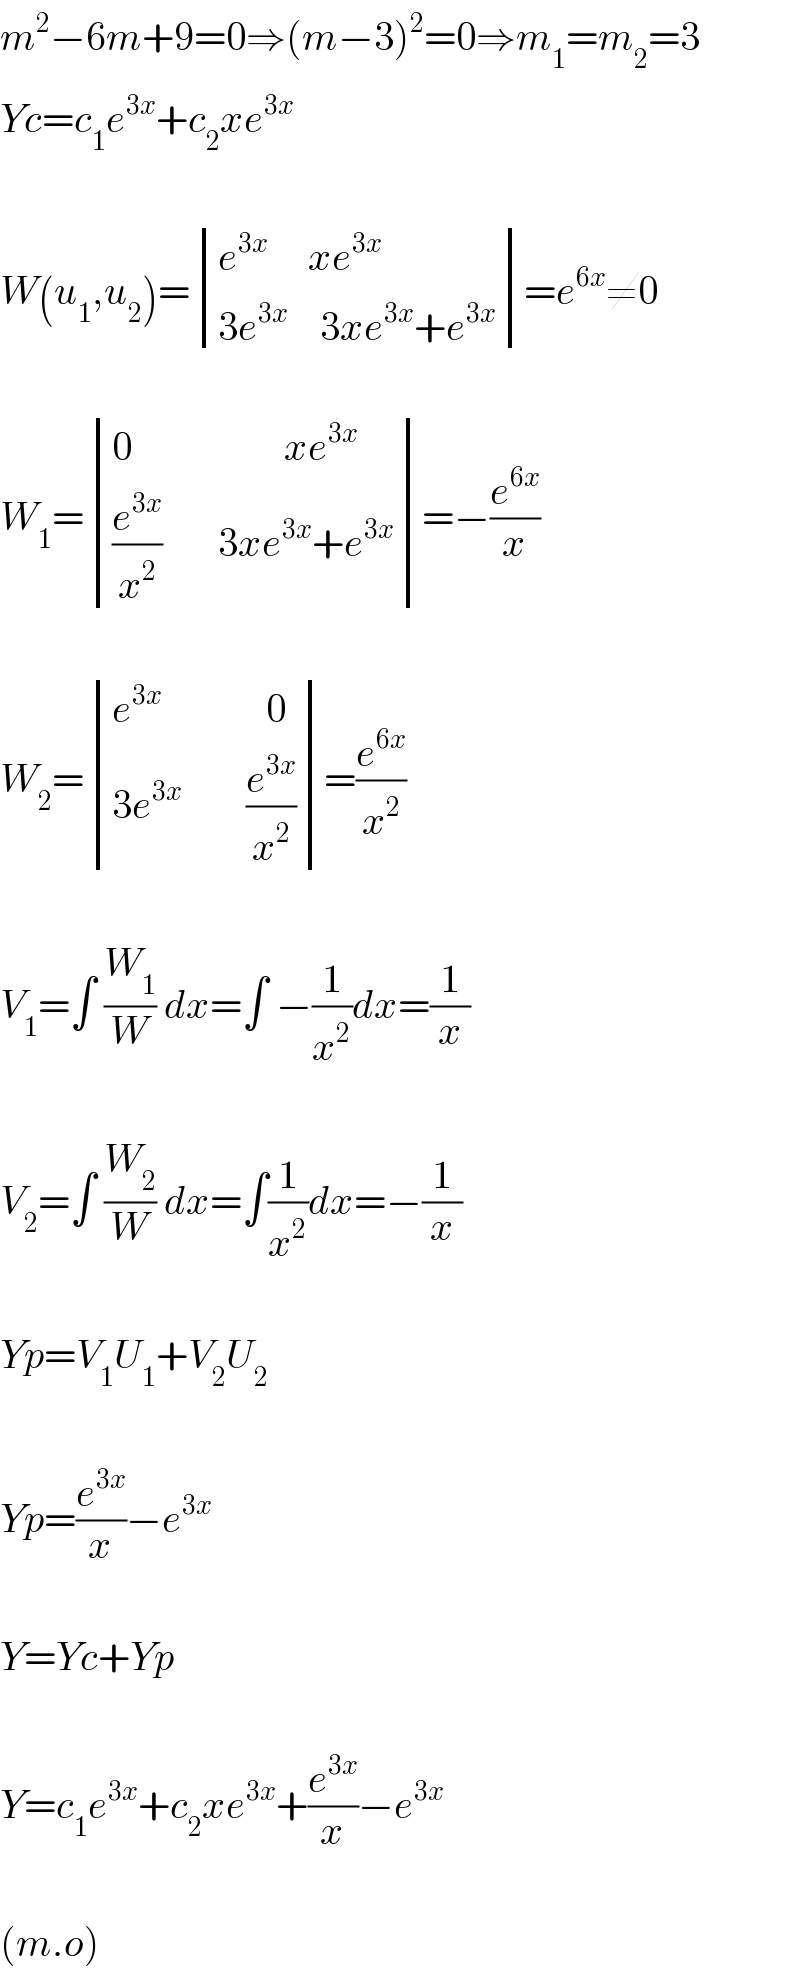 m^2 −6m+9=0⇒(m−3)^2 =0⇒m_1 =m_2 =3  Yc=c_1 e^(3x) +c_2 xe^(3x)     W(u_1 ,u_2 )= determinant (((e^(3x)      xe^(3x) )),((3e^(3x)     3xe^(3x) +e^(3x) )))=e^(6x) ≠0    W_1 = determinant (((0                   xe^(3x) )),(((e^(3x) /x^2 )       3xe^(3x) +e^(3x) )))=−(e^(6x) /x)    W_2 = determinant (((e^(3x)              0)),((3e^(3x)         (e^(3x) /x^2 ))))=(e^(6x) /x^2 )    V_1 =∫ (W_1 /W) dx=∫ −(1/x^2 )dx=(1/x)    V_2 =∫ (W_2 /W) dx=∫(1/x^2 )dx=−(1/x)    Yp=V_1 U_1 +V_2 U_2     Yp=(e^(3x) /x)−e^(3x)     Y=Yc+Yp    Y=c_1 e^(3x) +c_2 xe^(3x) +(e^(3x) /x)−e^(3x)     (m.o)  